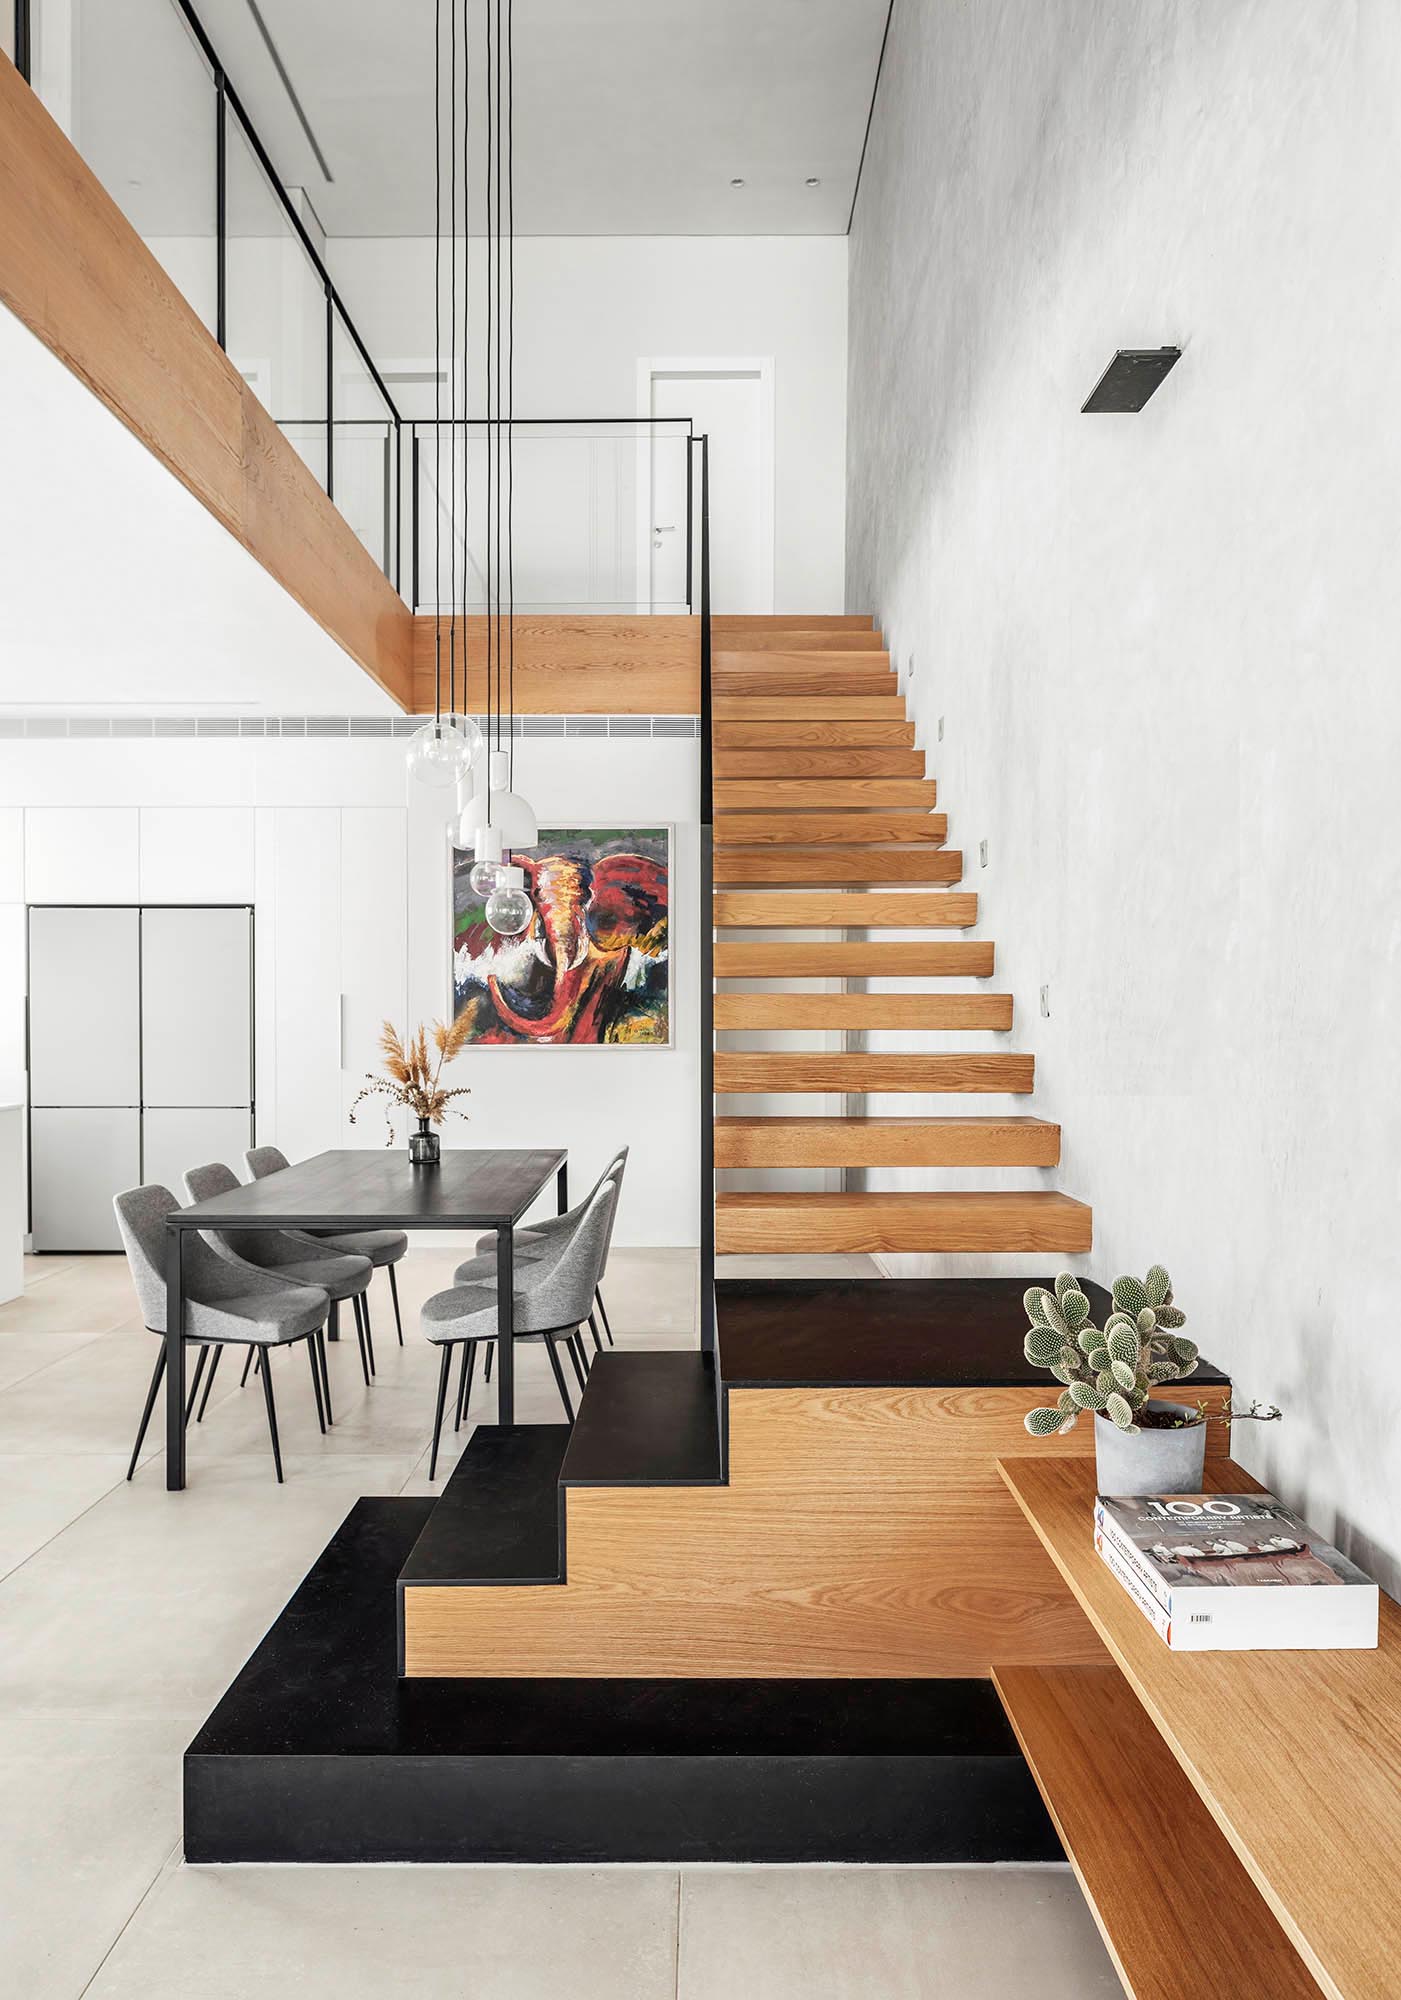 Плавающая дубовая лестница соединяет различные уровни этого современного дома, включает лестницу из черного железа внизу и переходы, которые превращаются в буфет для телевизора в гостиной.